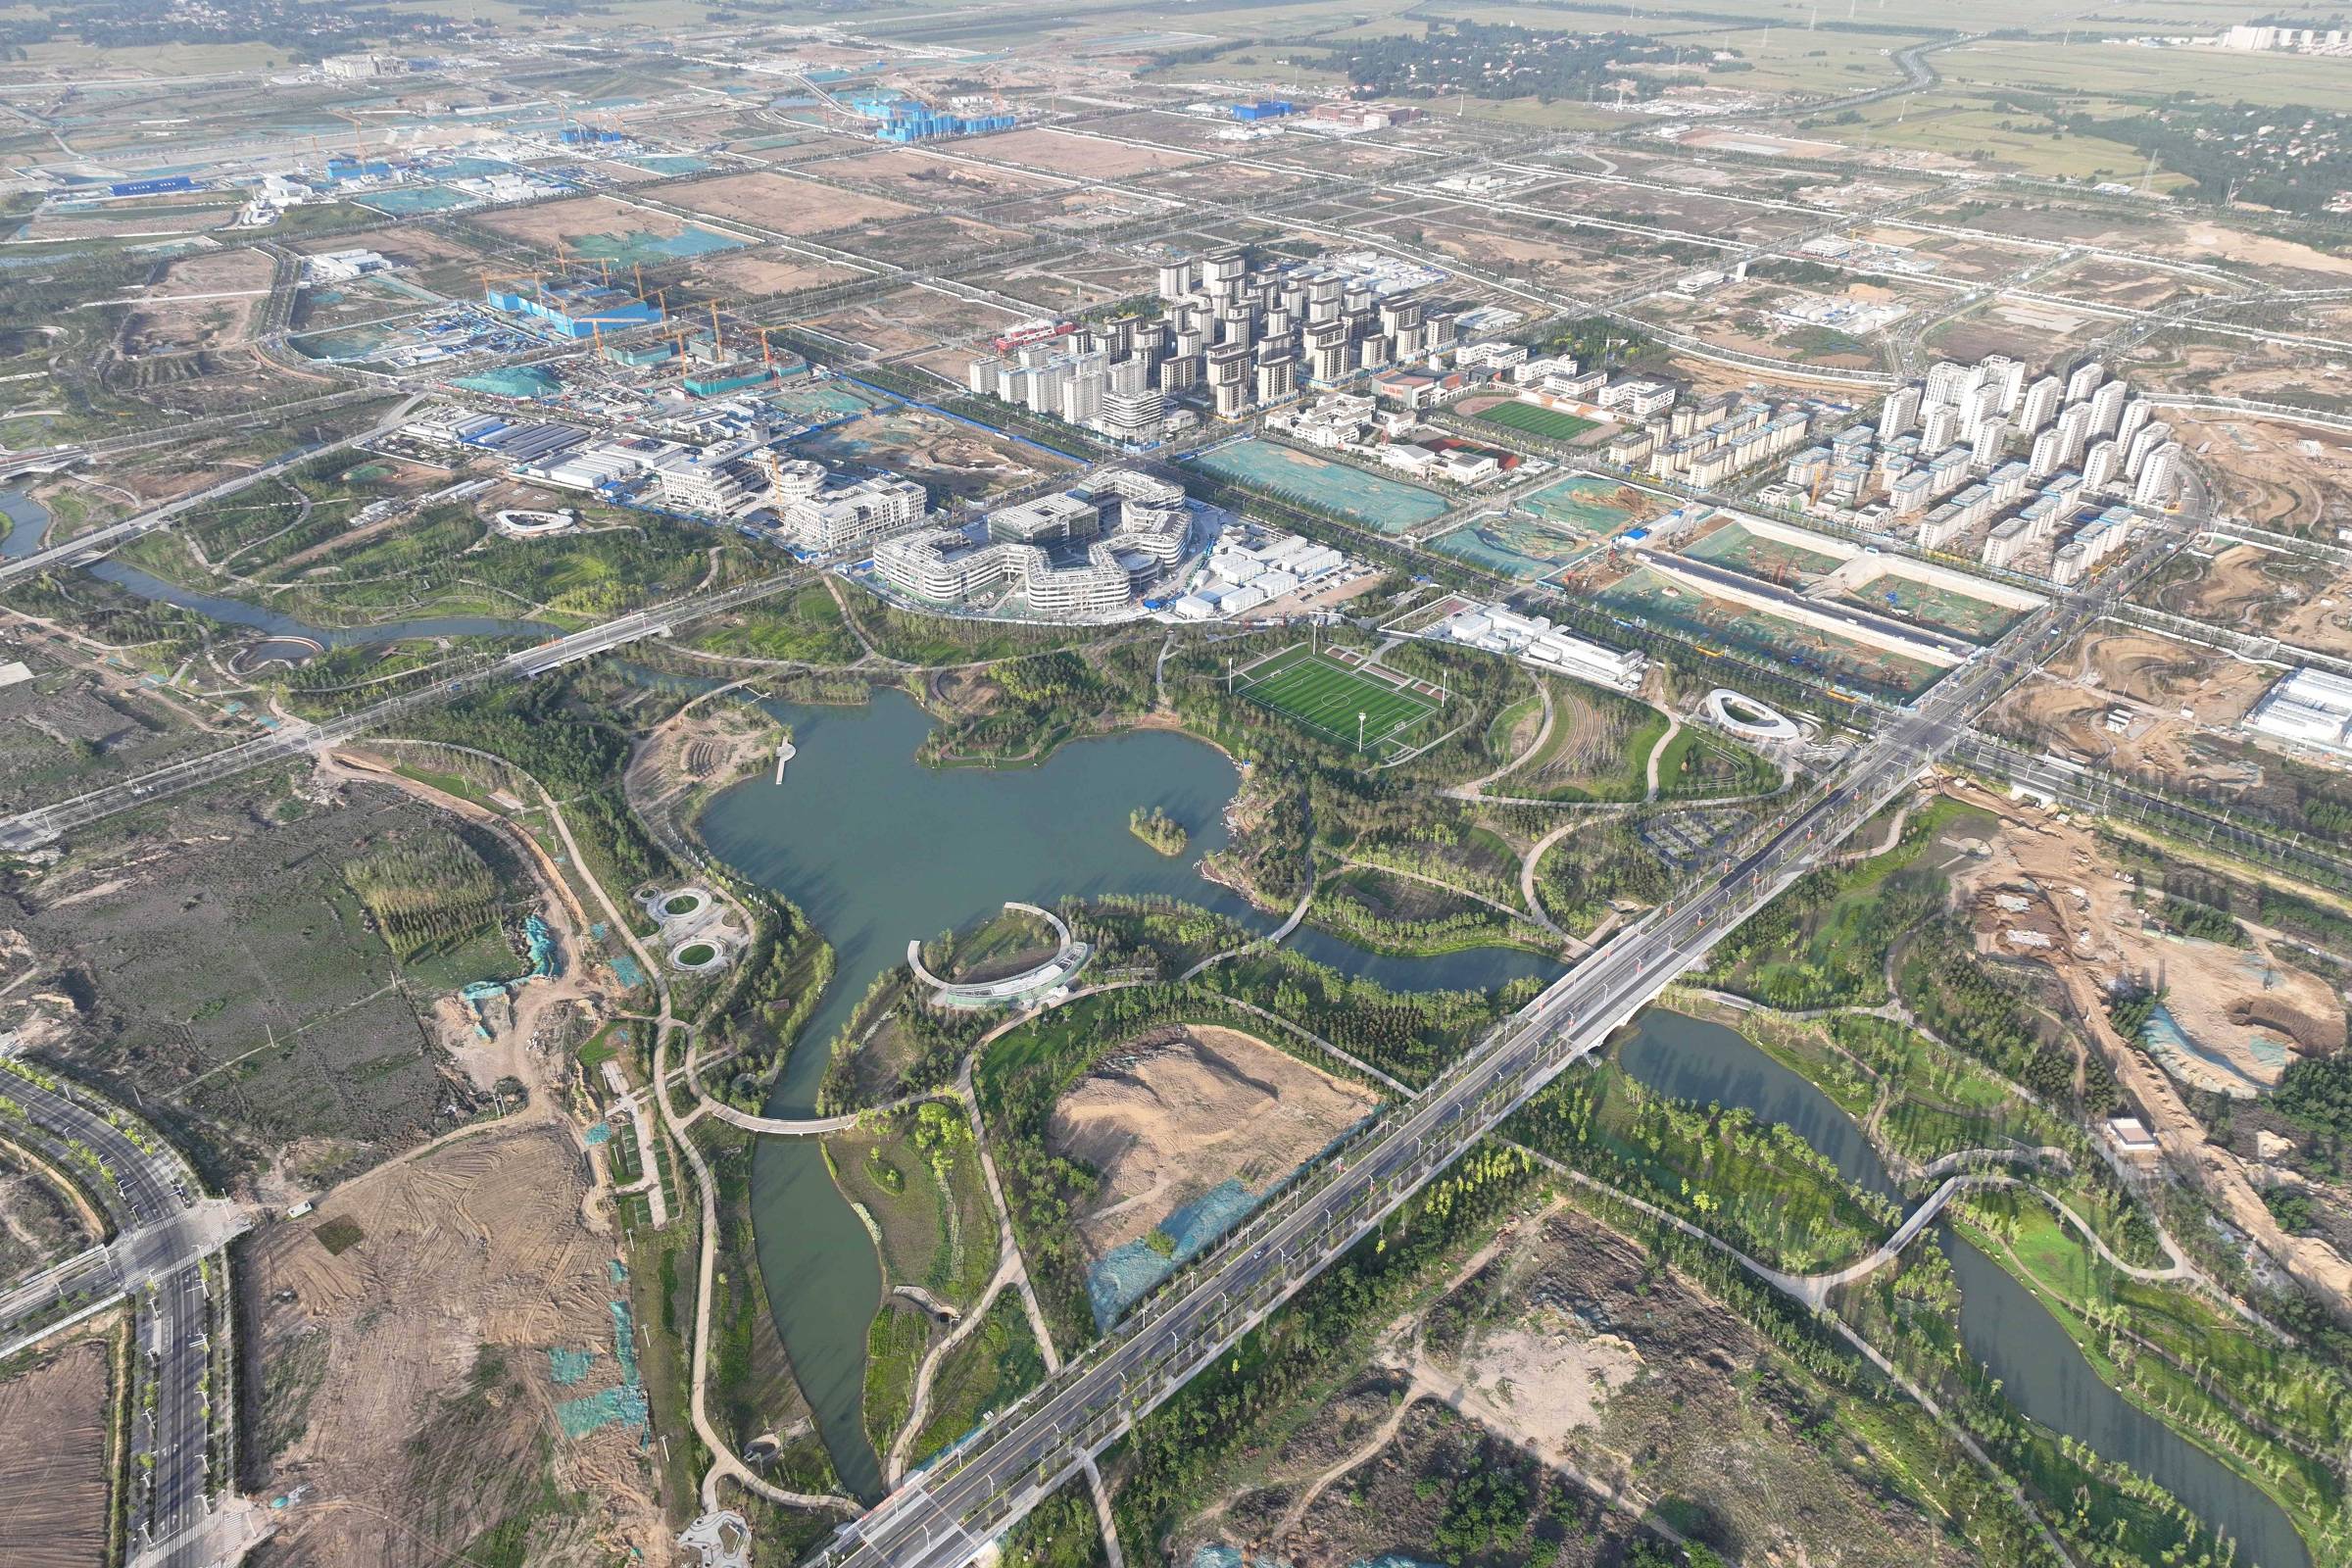 Xiong’an, Xi Jinping’s Brasilia, begins to take shape in China